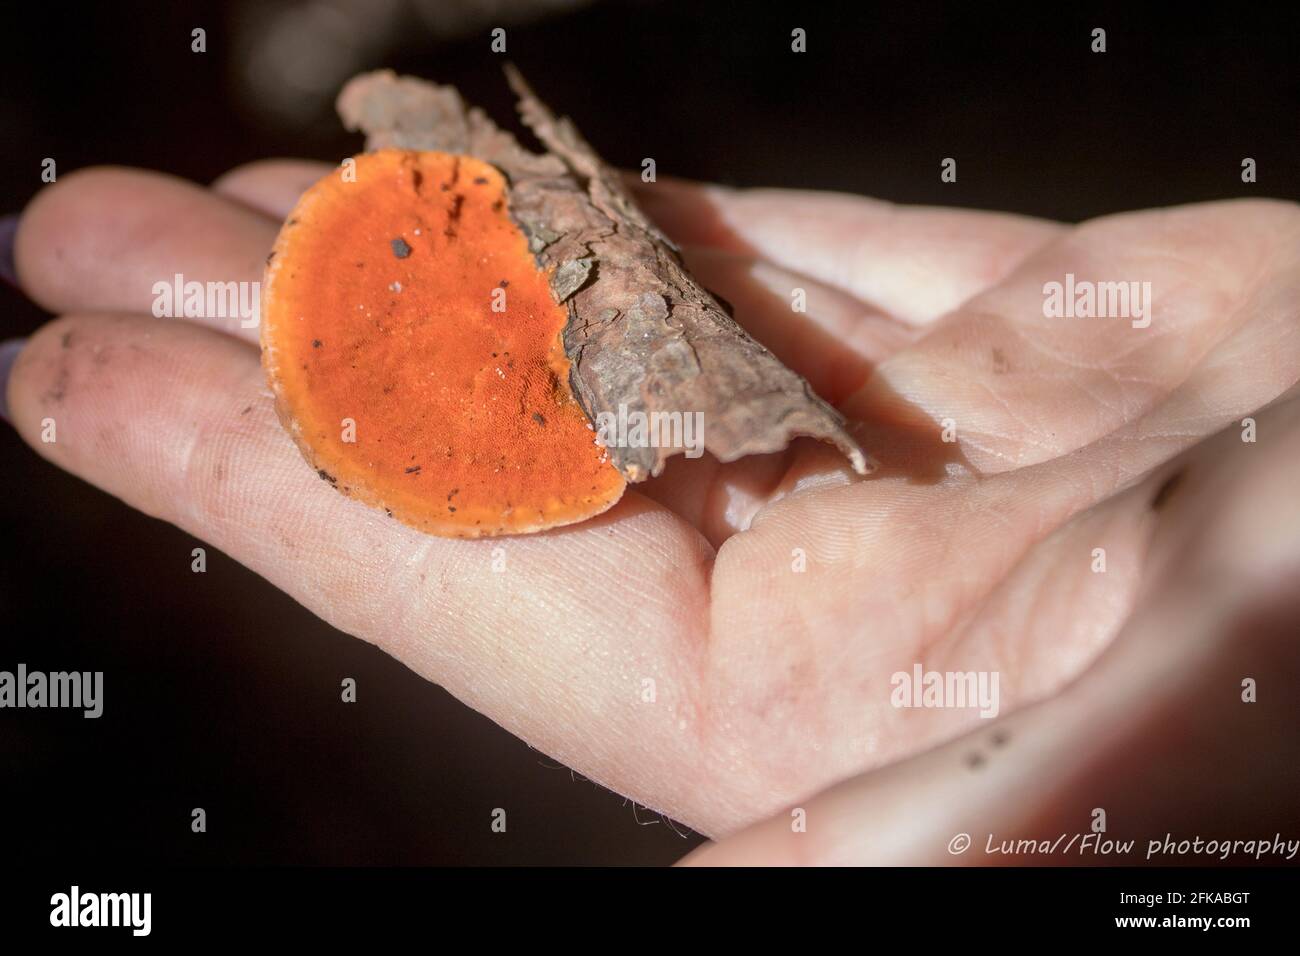 Champignon polypore orange vif attaché à un petit bâton qui a été trouvé lors d'une promenade dans la nature dans le Bush australien pendant l'automne. La lumière du soleil l'illumine Banque D'Images